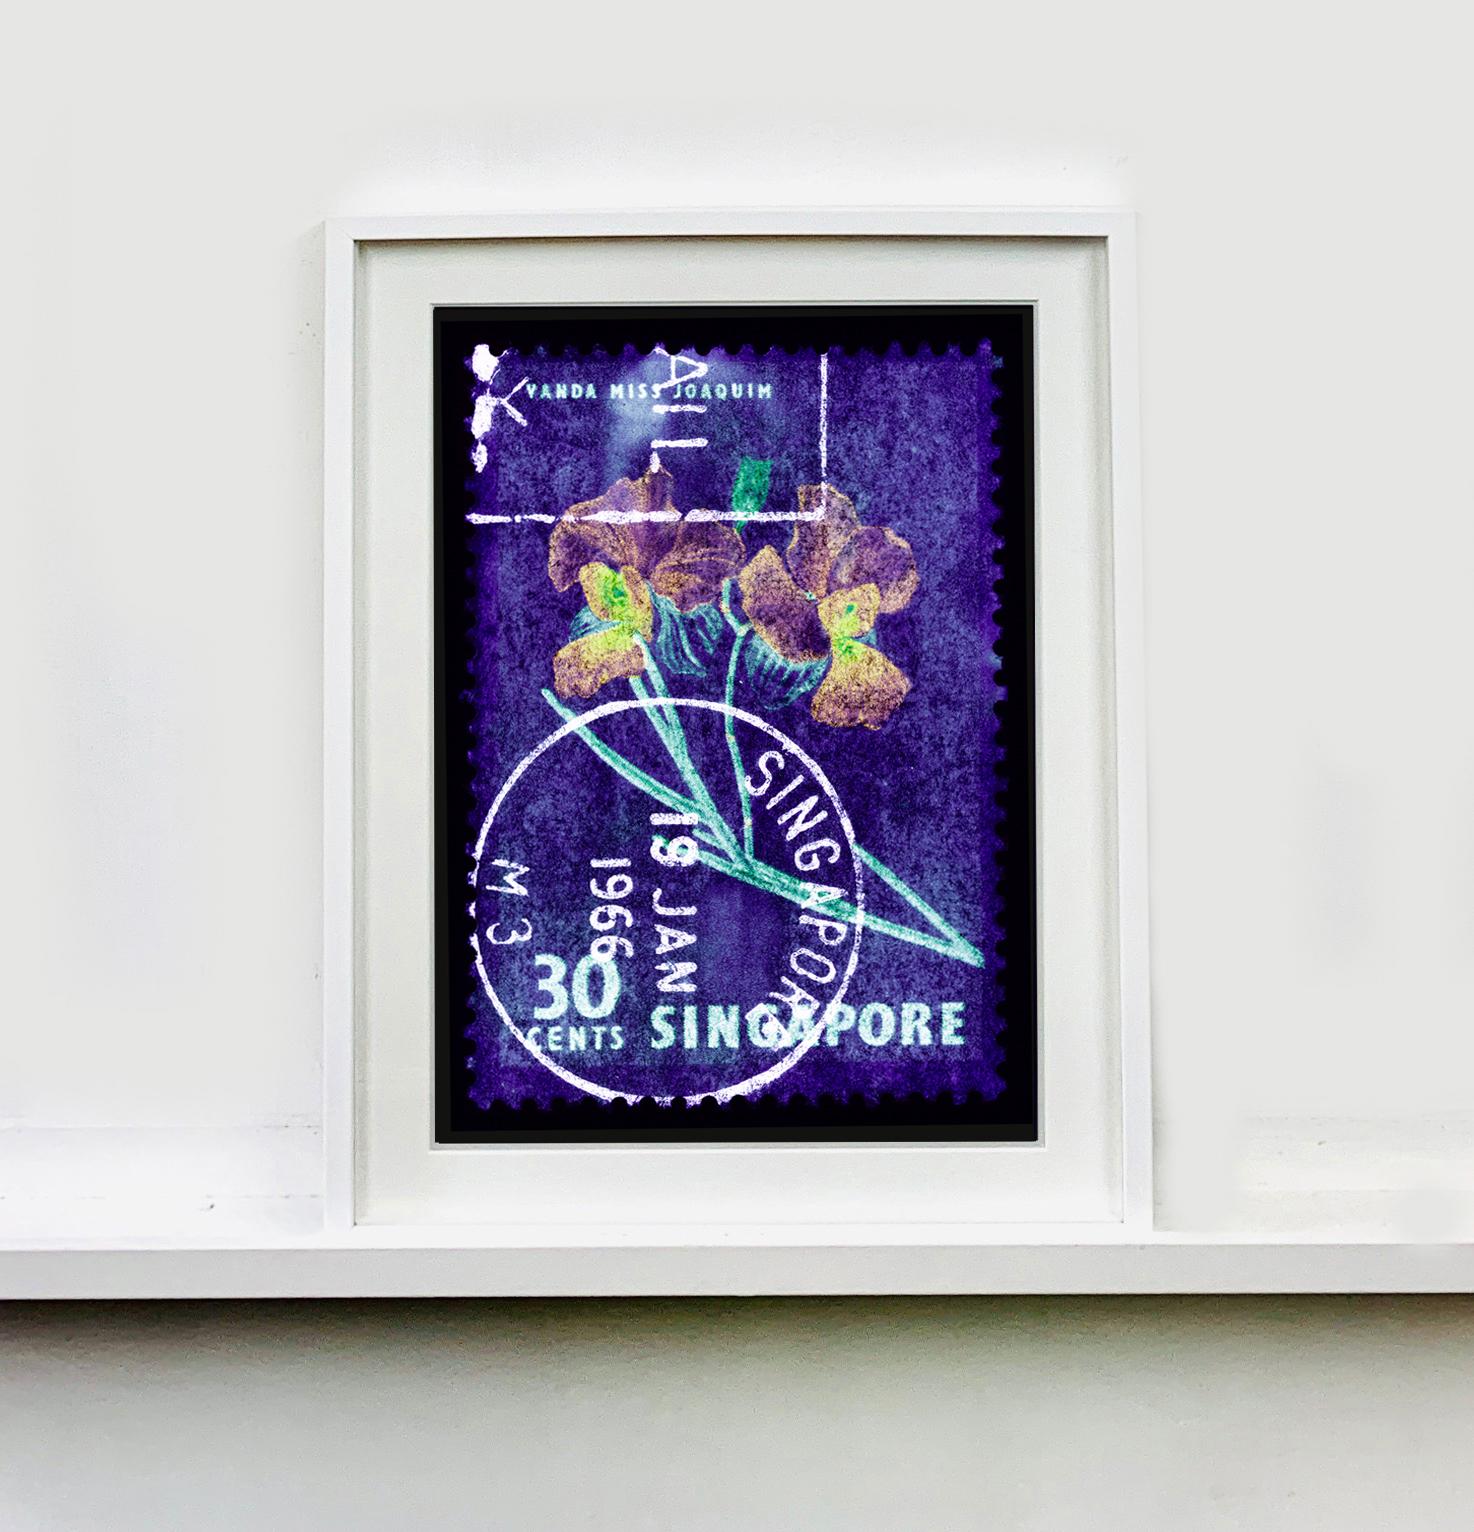 30 Cents Singapore Orchid Purple, de la collection de timbres Heidler & Heeps.
Ces timbres-poste historiques qui constituent la collection de timbres Heidler & Heeps, série Singapour 